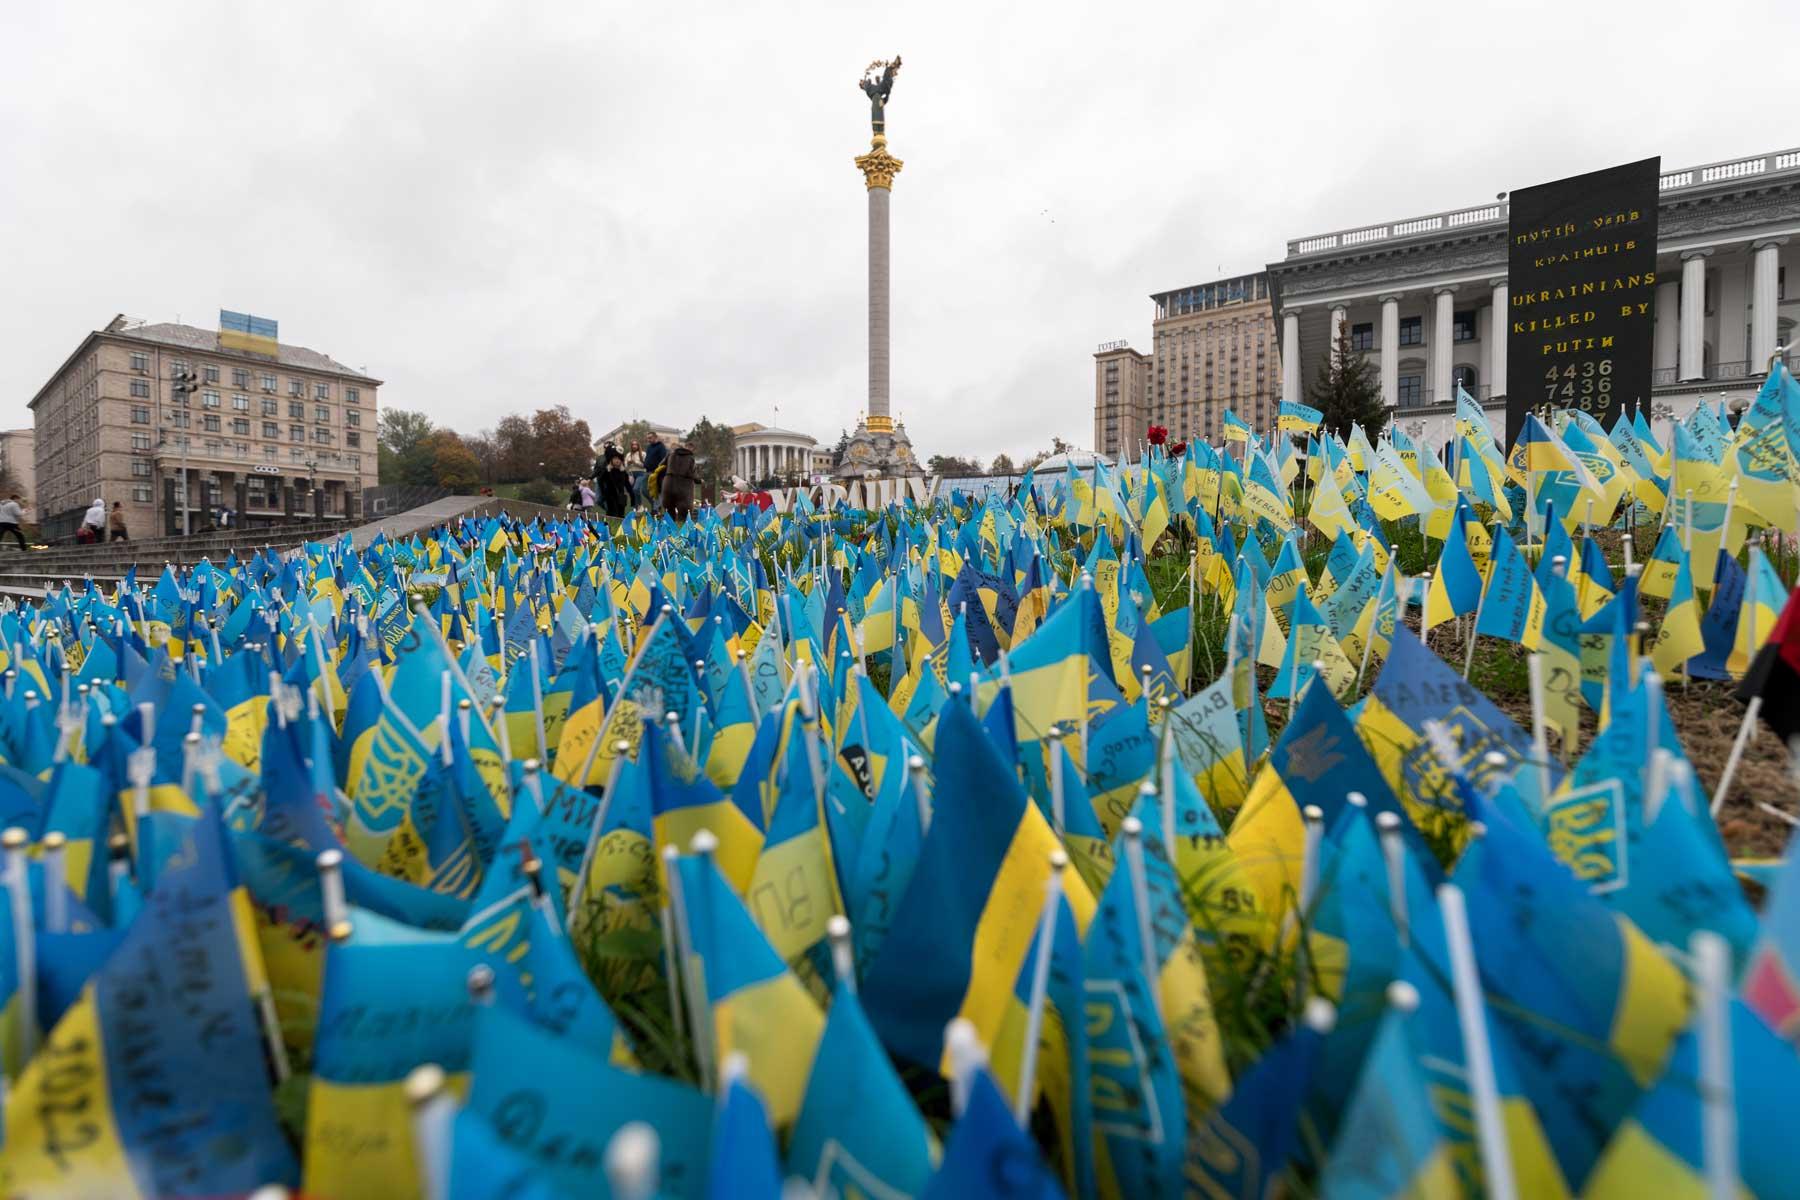 Auf dem Maidan Nezalezhnosti - dem Unabhängigkeitsplatz - wurden Tausende von ukrainischen Flaggen vor dem Unabhängigkeitsdenkmal aufgestellt, um der Menschen zu gedenken, die seit dem Einmarsch der russischen Streitkräfte in die Ukraine im Februar 2022 ihr Leben verloren haben. Foto: LWB/Abin Hillert